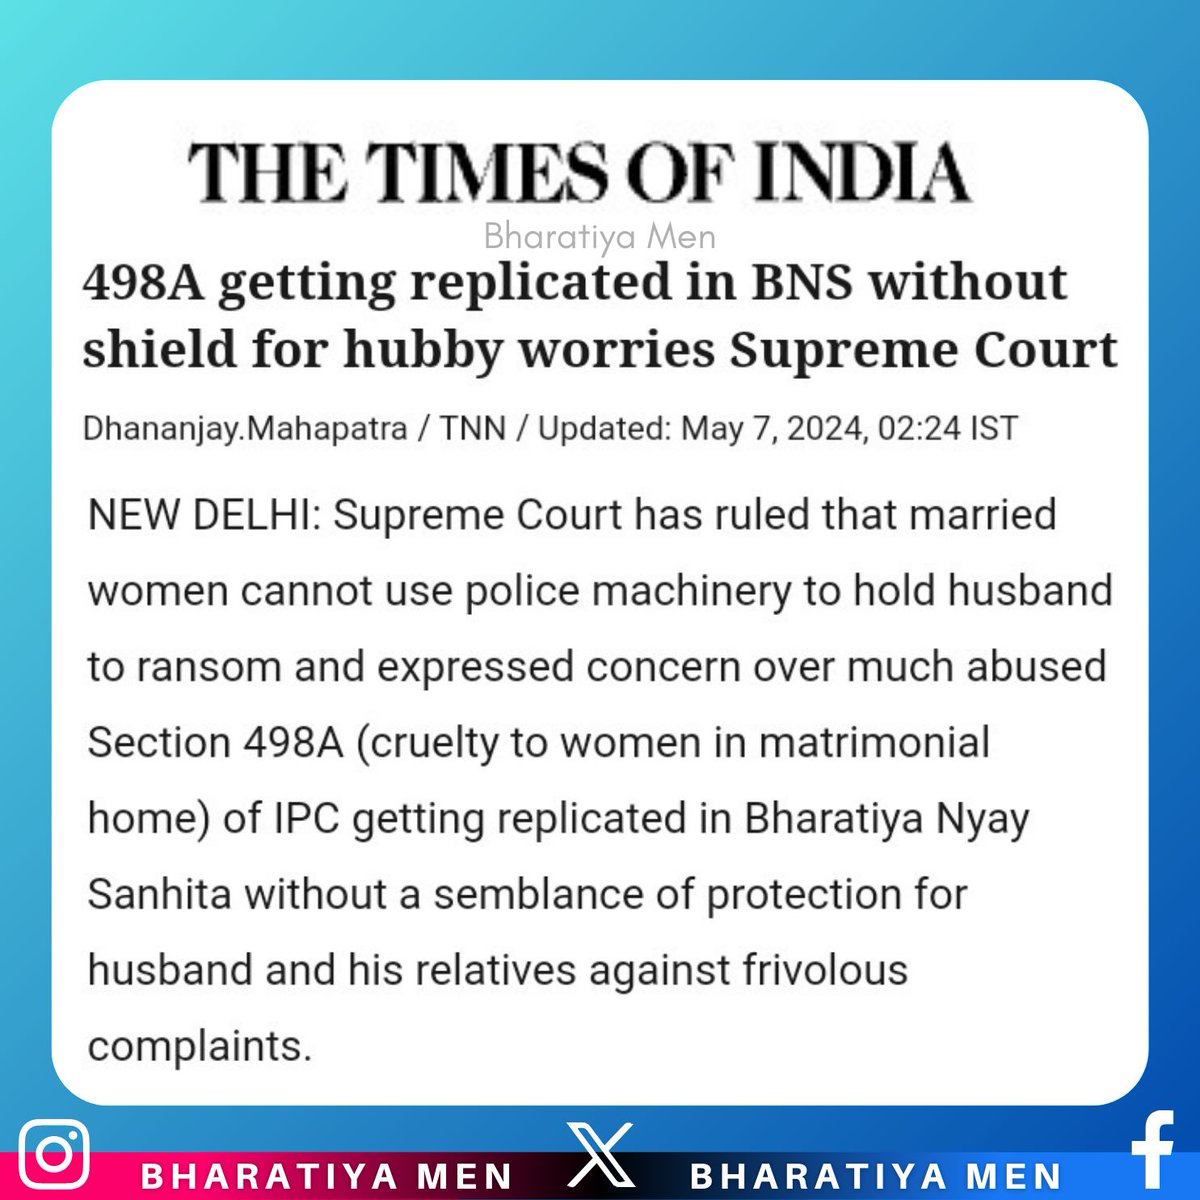 Supreme Court ने जोर दिया कि पत्नियों को वैवाहिक नुकसान से बचाने के लिए बनाए गए कानूनों का दुरुपयोग पतियों पर गलत आरोप लगाने के लिए नहीं किया जाना चाहिए। इसने पति और उसके परिवार को नुकसान पहुंचाने वाले निराधार आरोपों को रोकने के लिए कानून में निष्पक्षता की आवश्यकता पर जोर दिया।